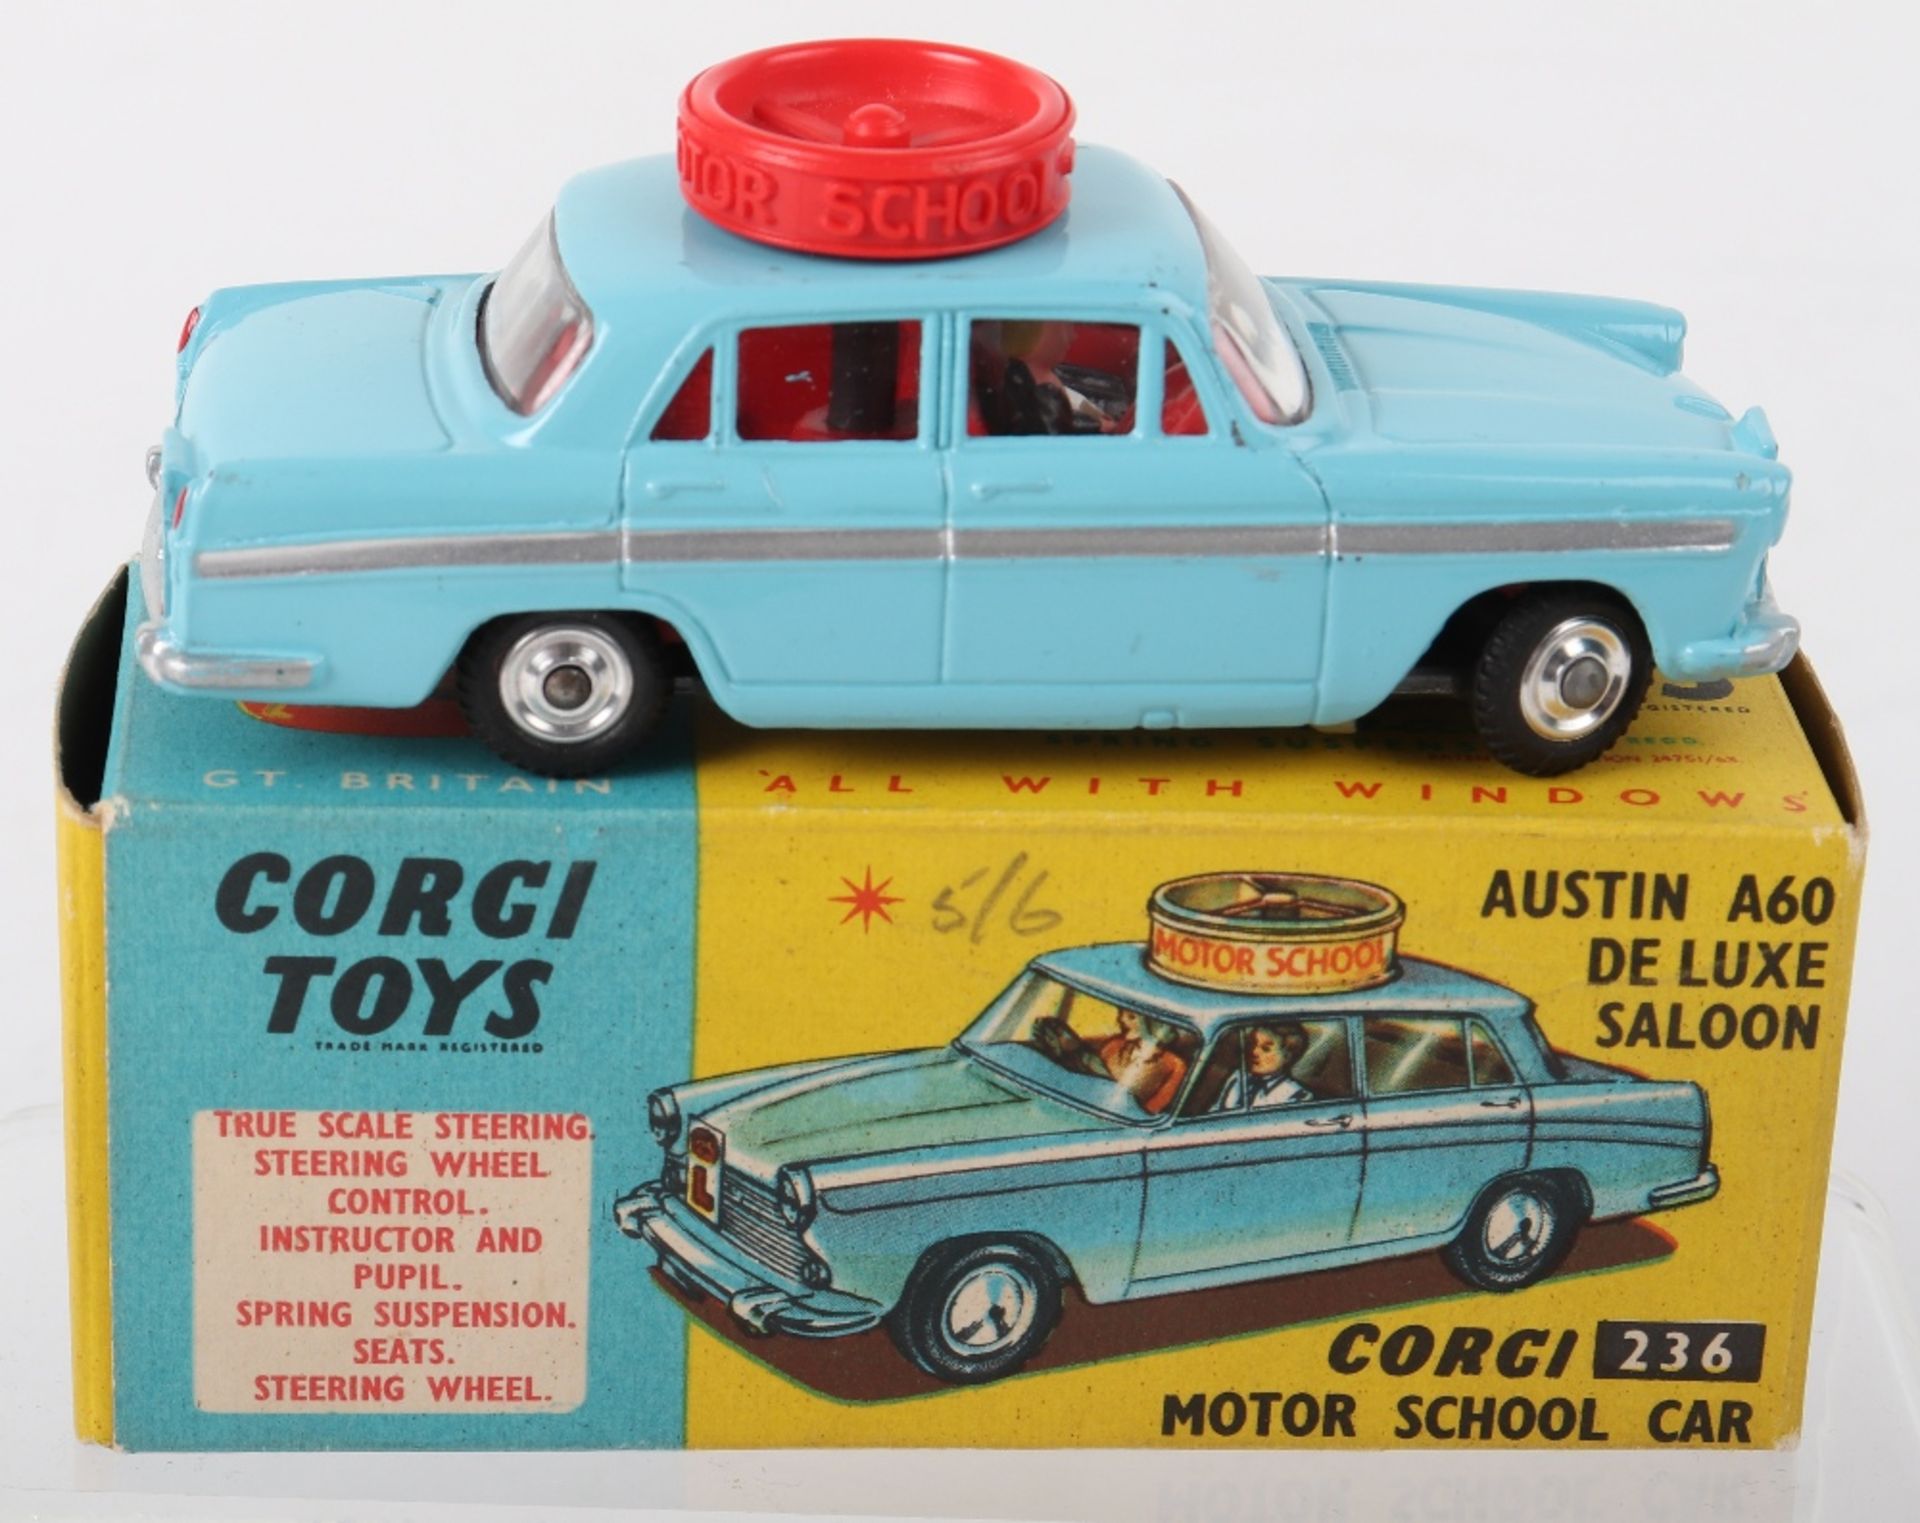 Corgi Toys 236 Austin A60 De Luxe Saloon ‘Corgi’ Motor School Car - Image 2 of 7